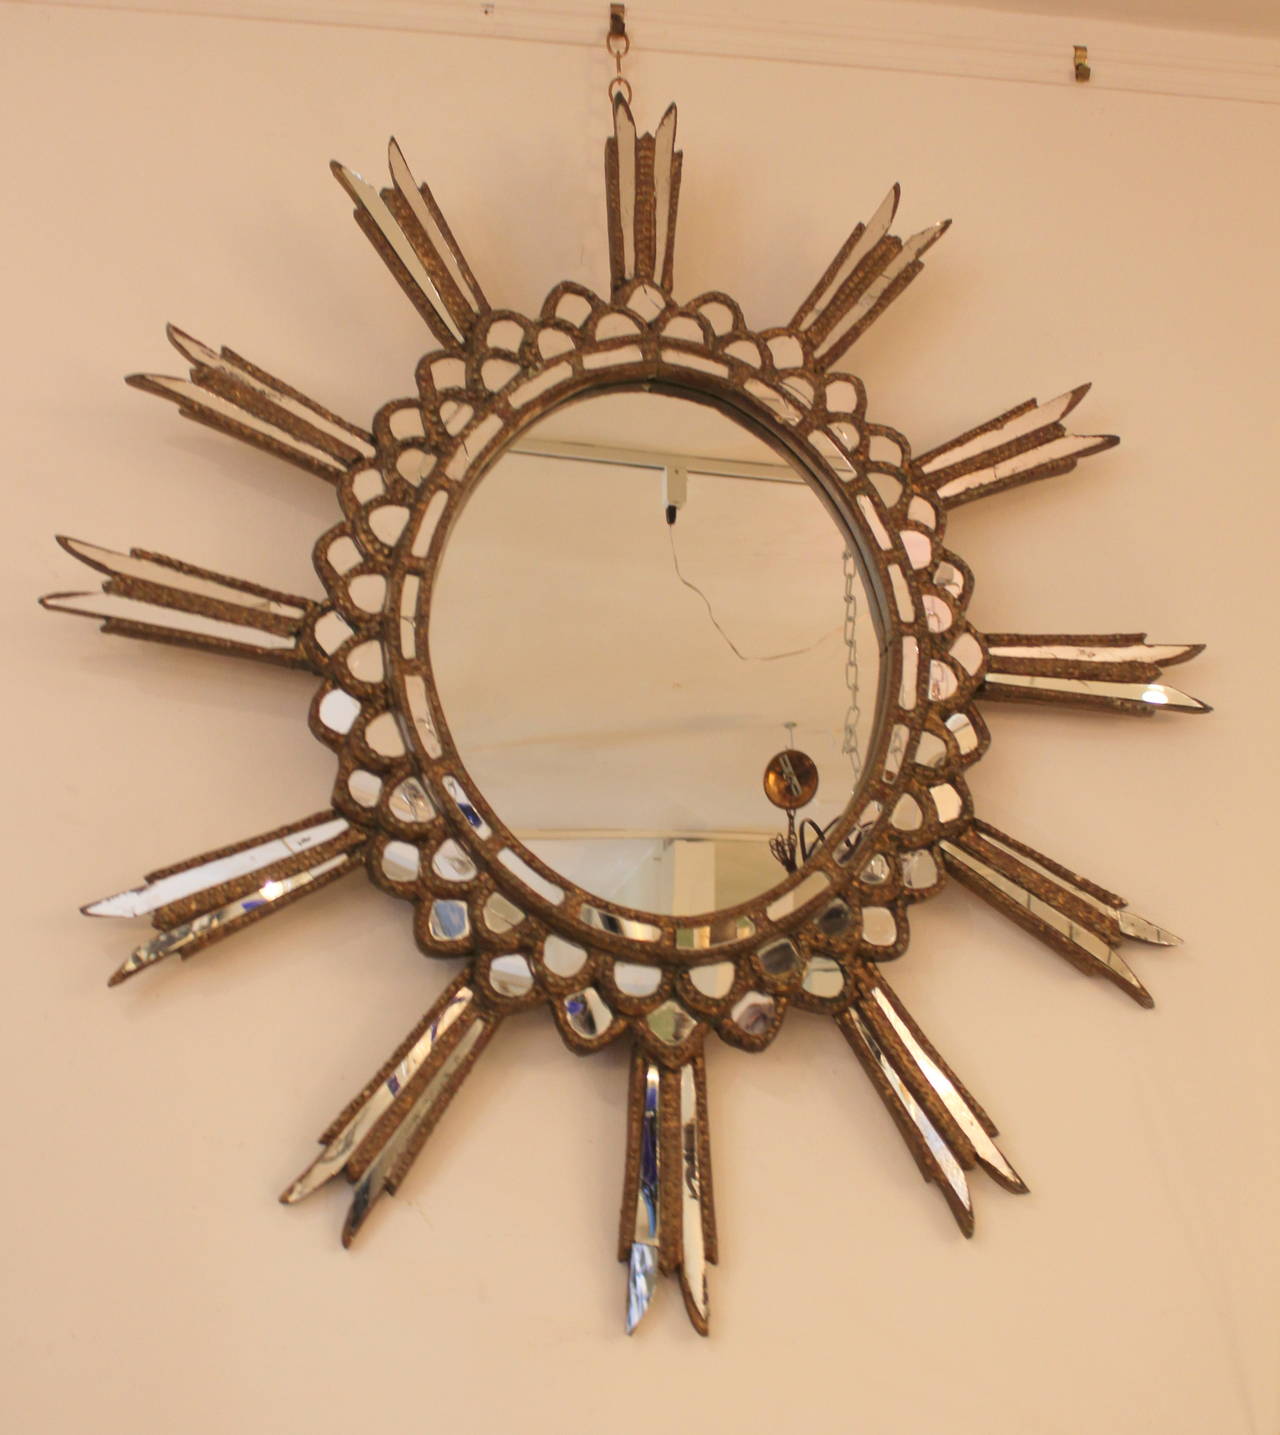 1940s Argentine starburst mirror. Original gilt finish and mirror.
Some minor broken mirror pieces.